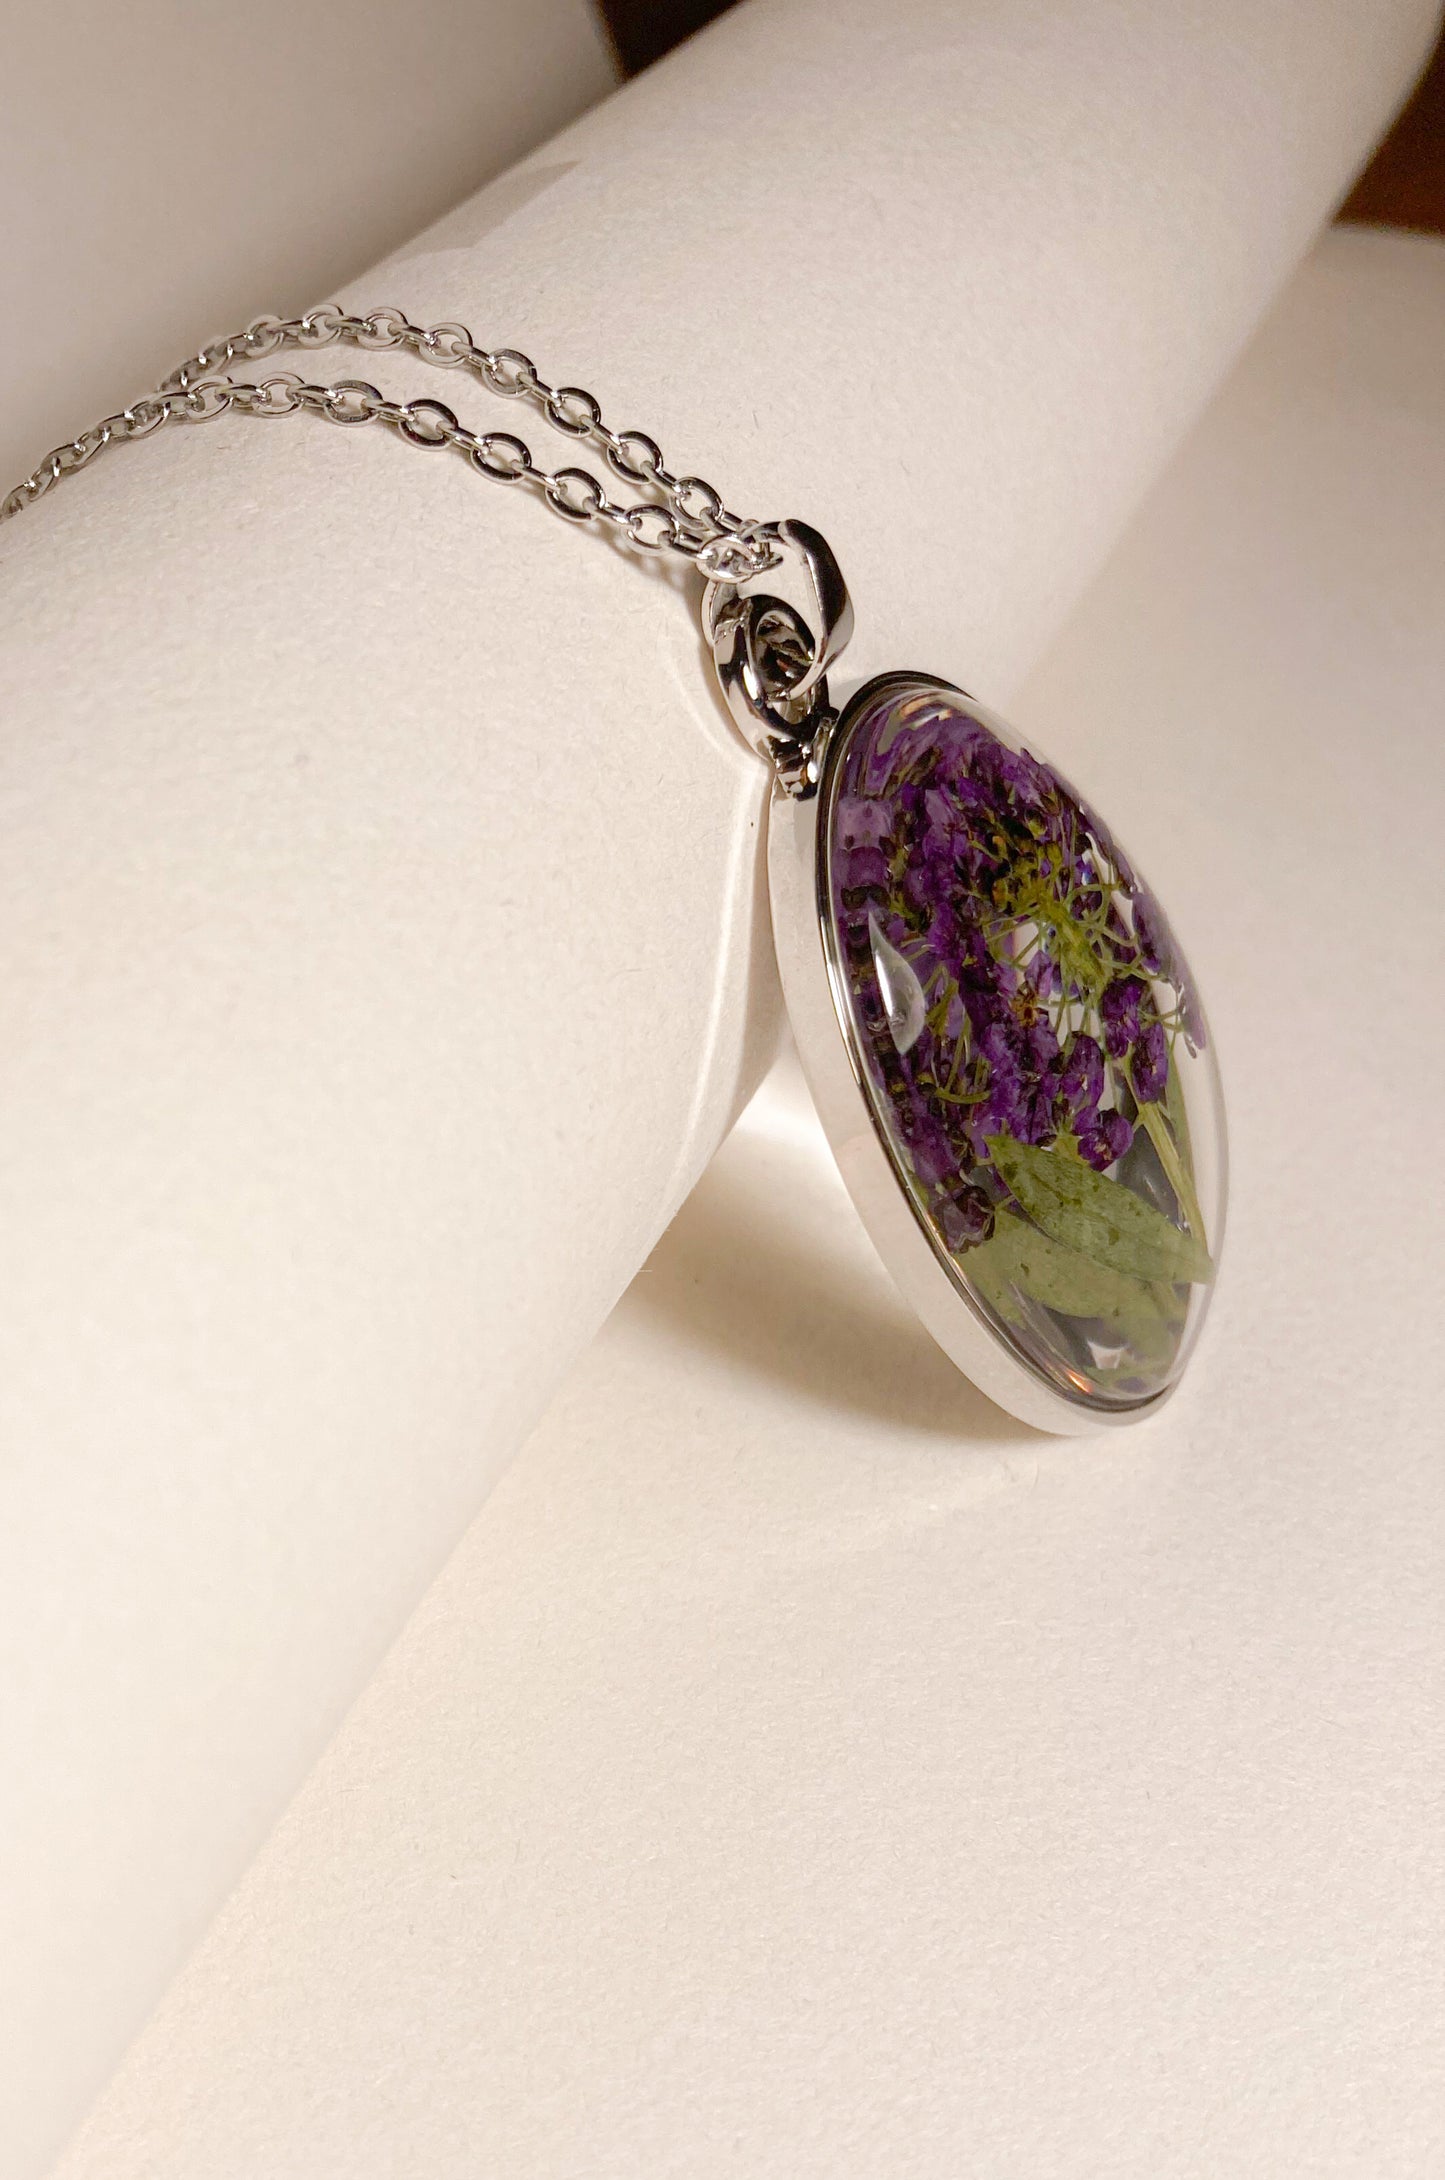 Pressed flower necklace - Purple Flower